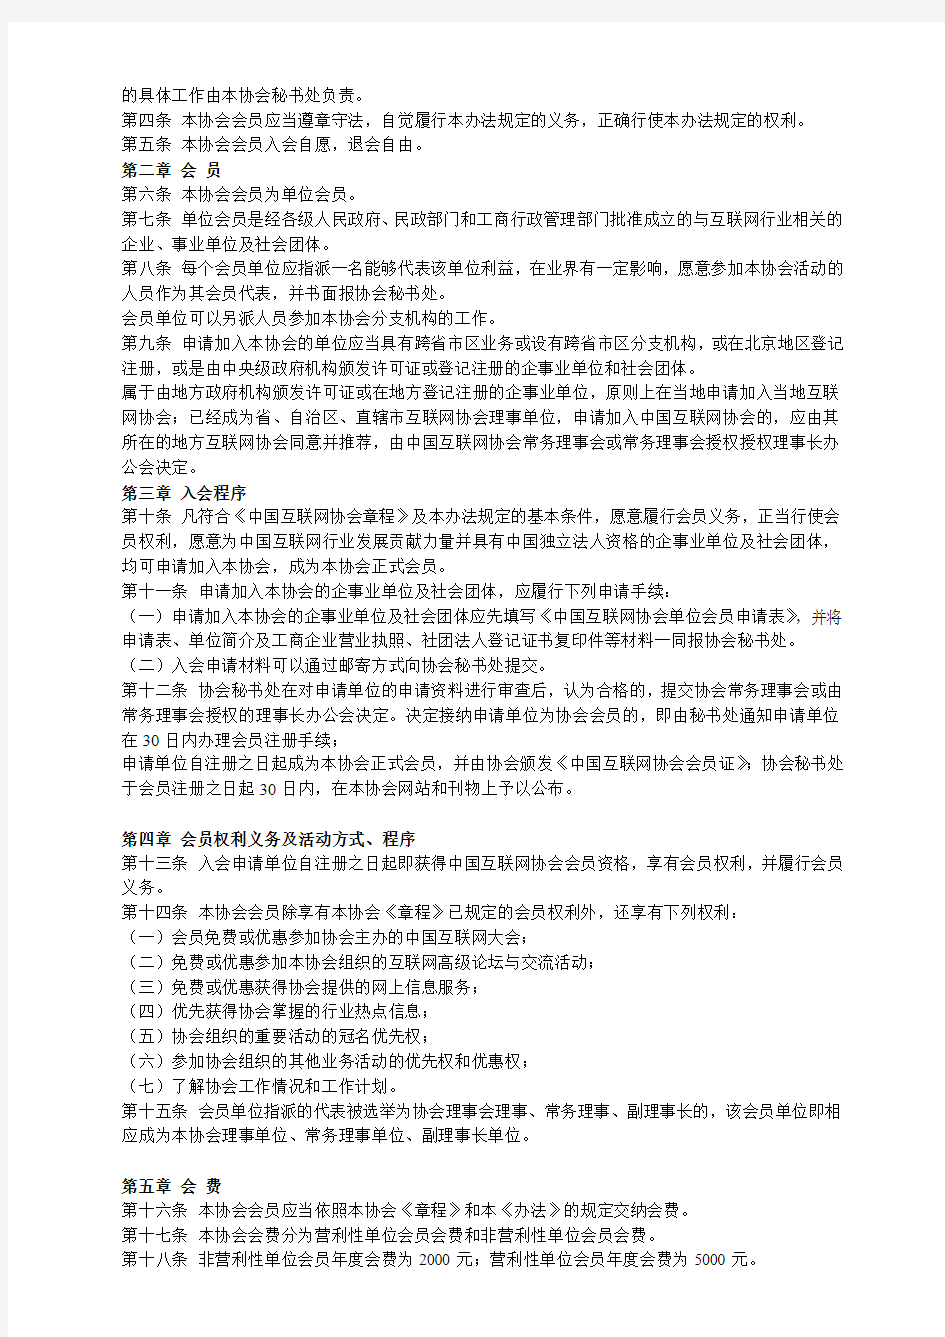 中国互联网协会会员入会办法和会员管理